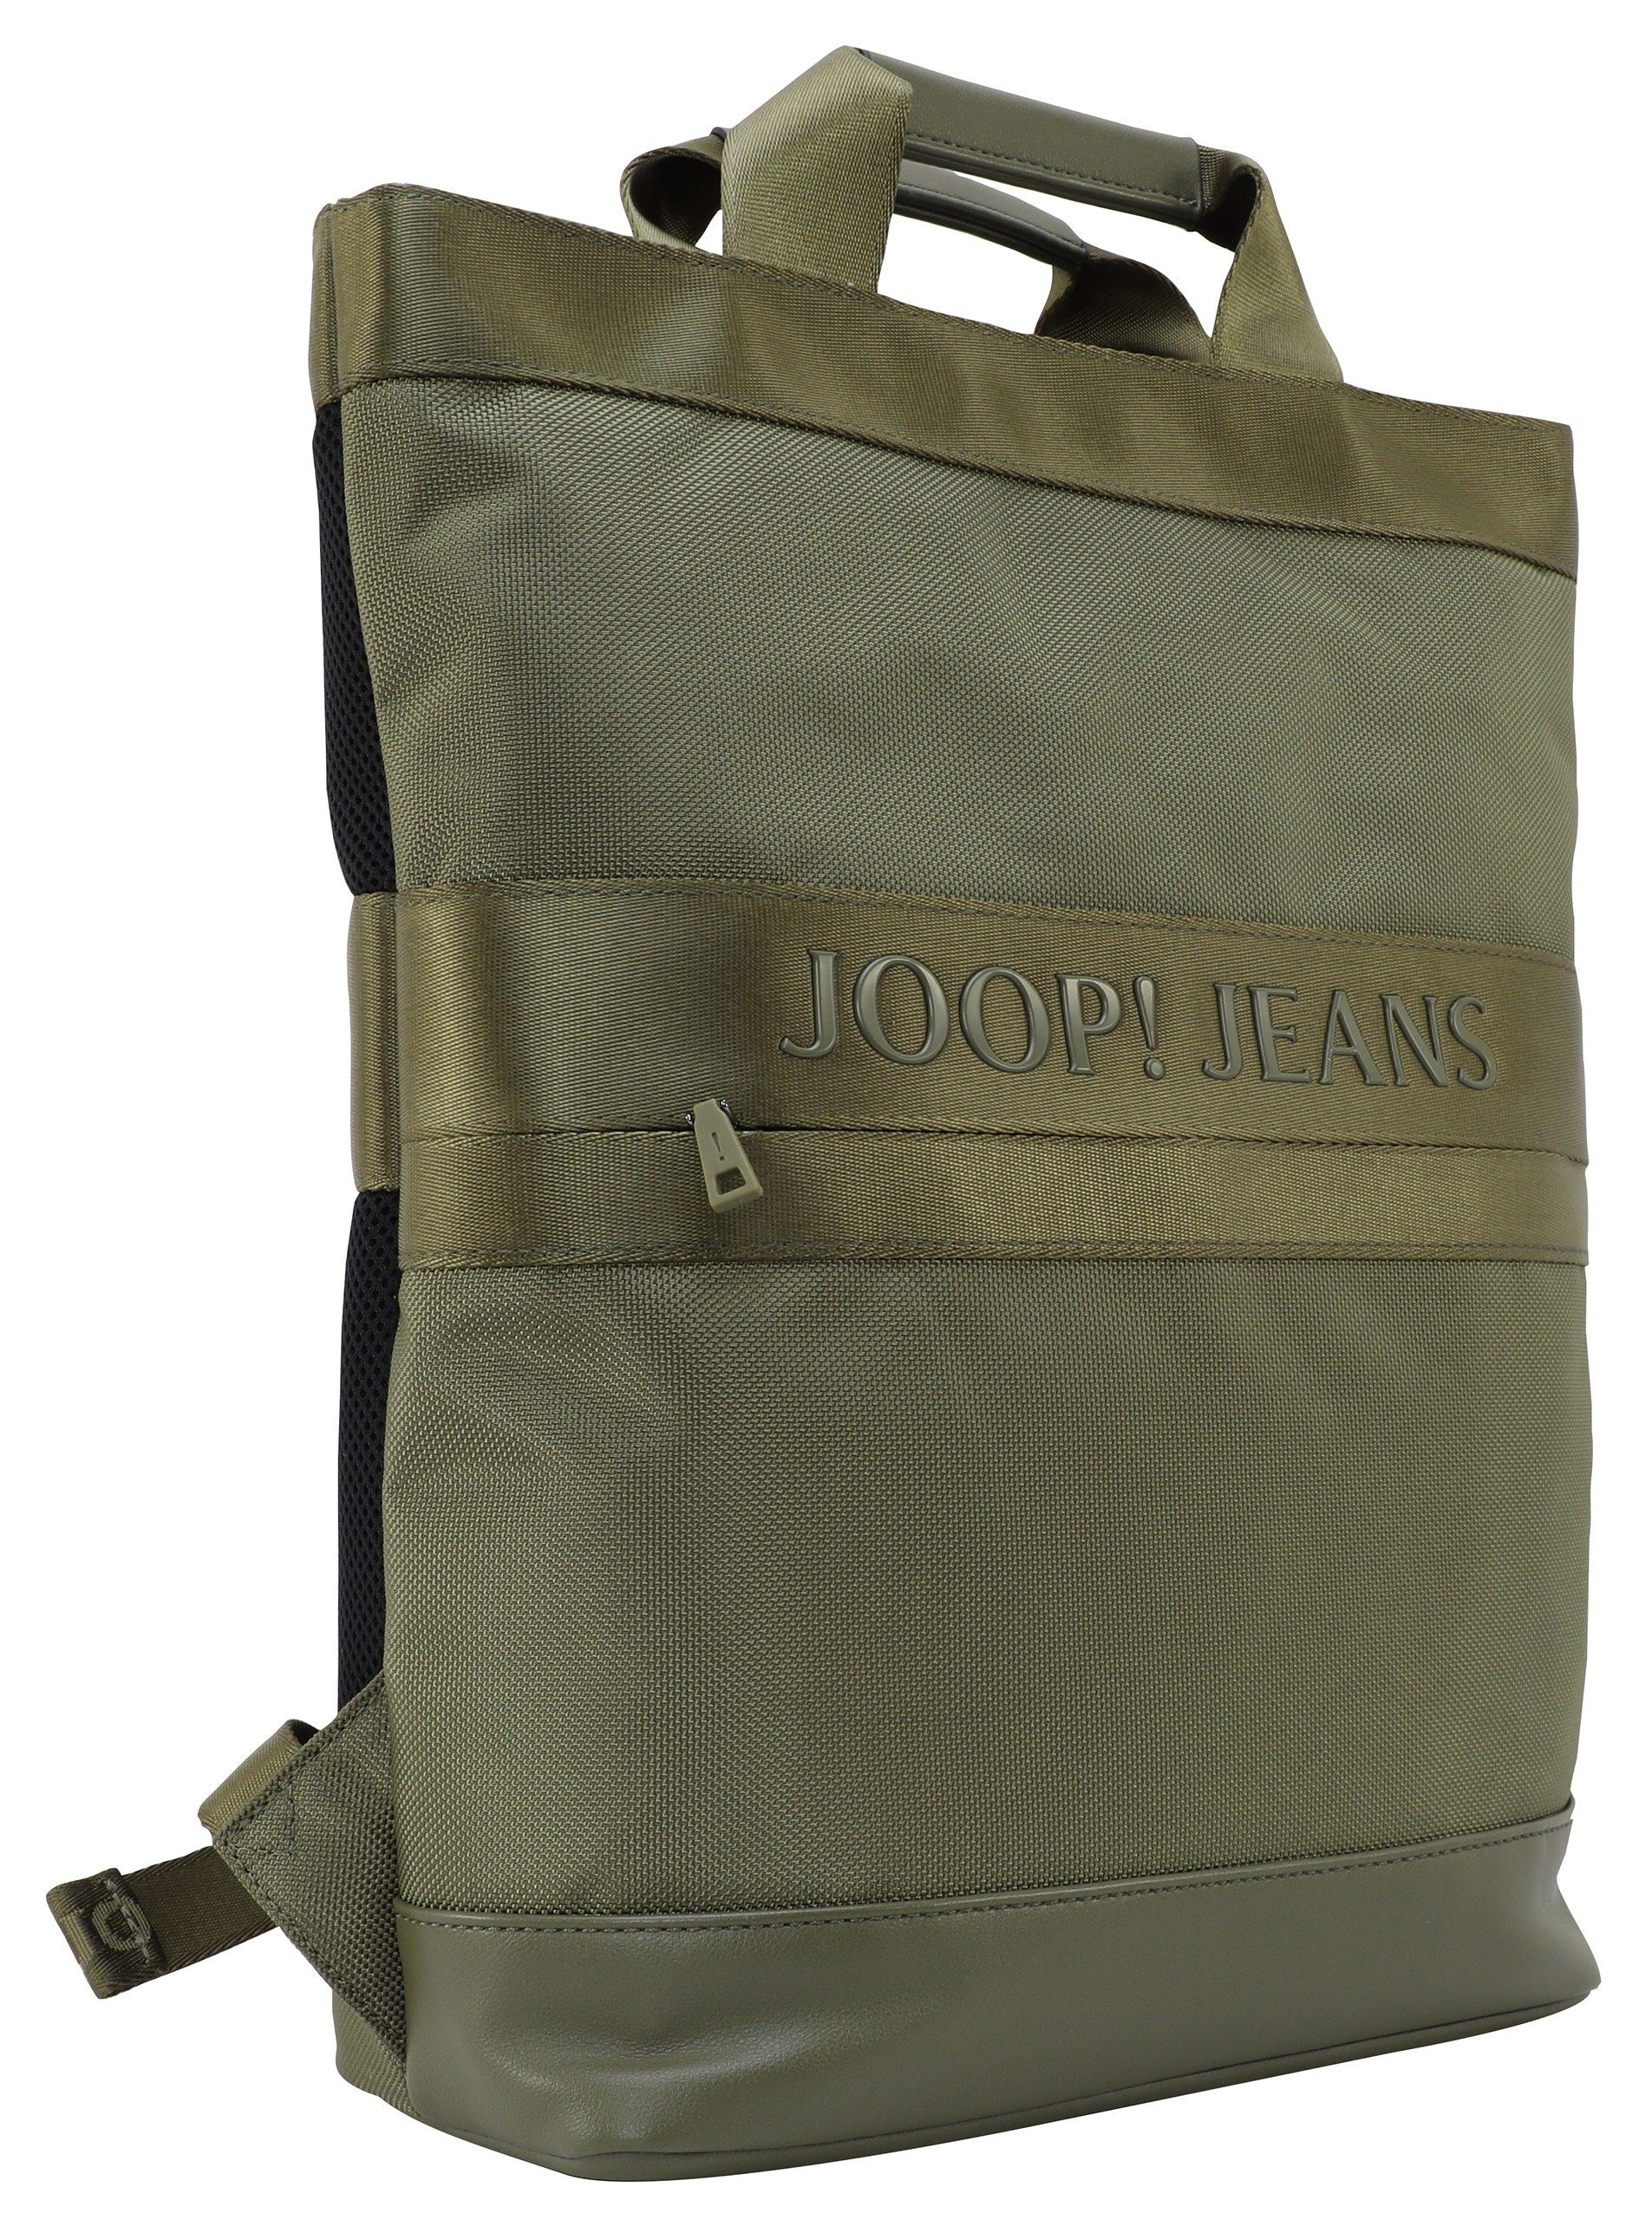 Joop Jeans Cityrucksack modica falk backpack Reißverschluss-Vortasche forest mit night svz